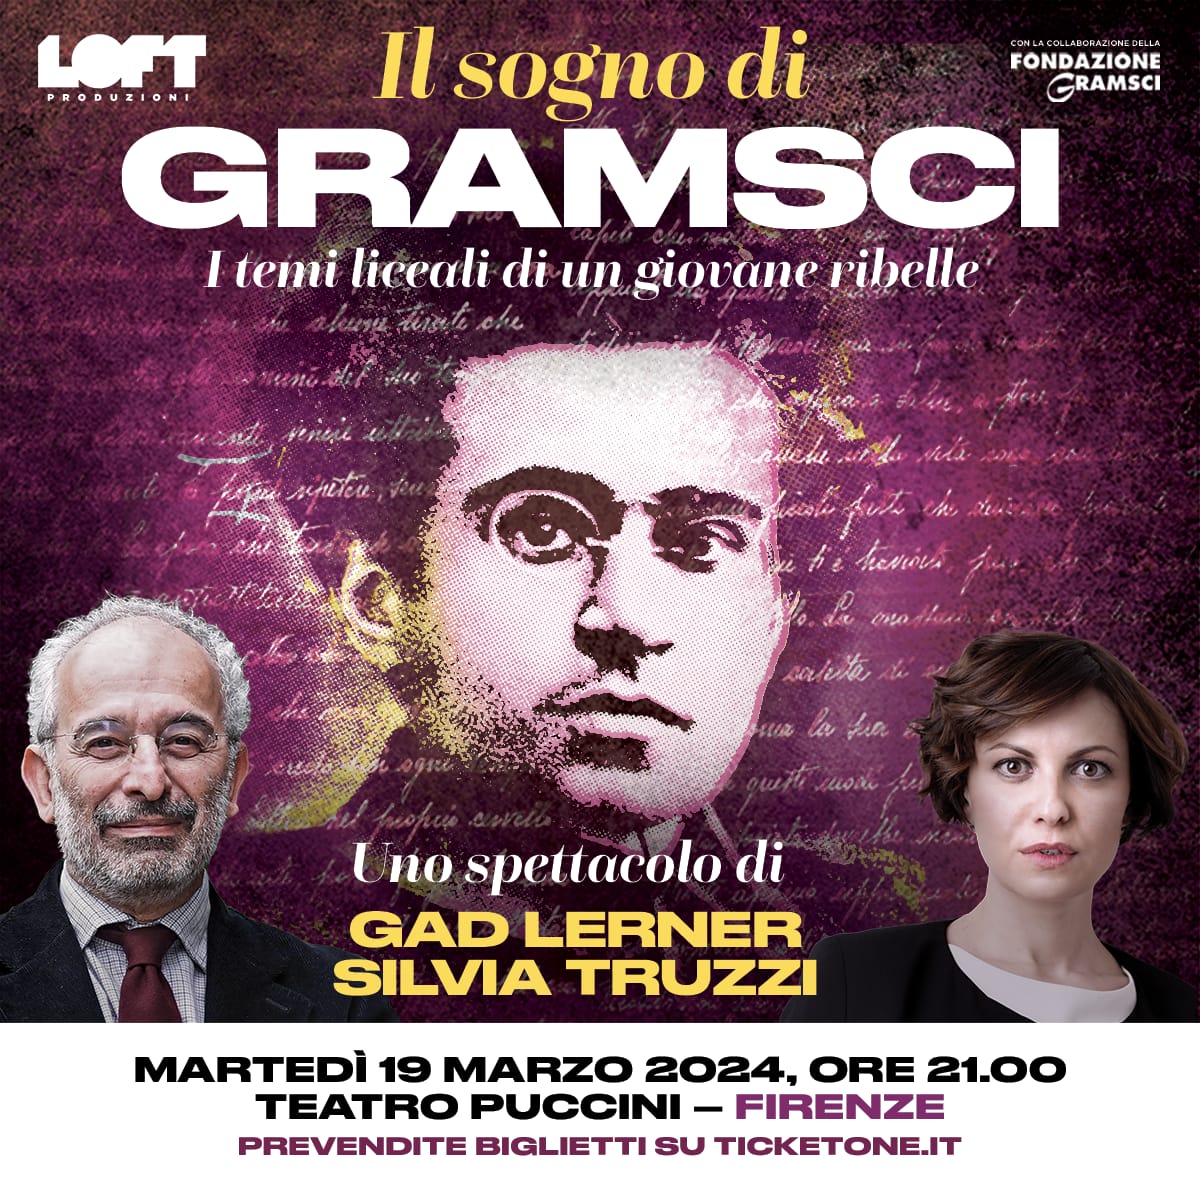 Martedì prossimo portiamo il nostro giovane #Gramsci a Firenze. Di questi tempi ha molto da raccontarci